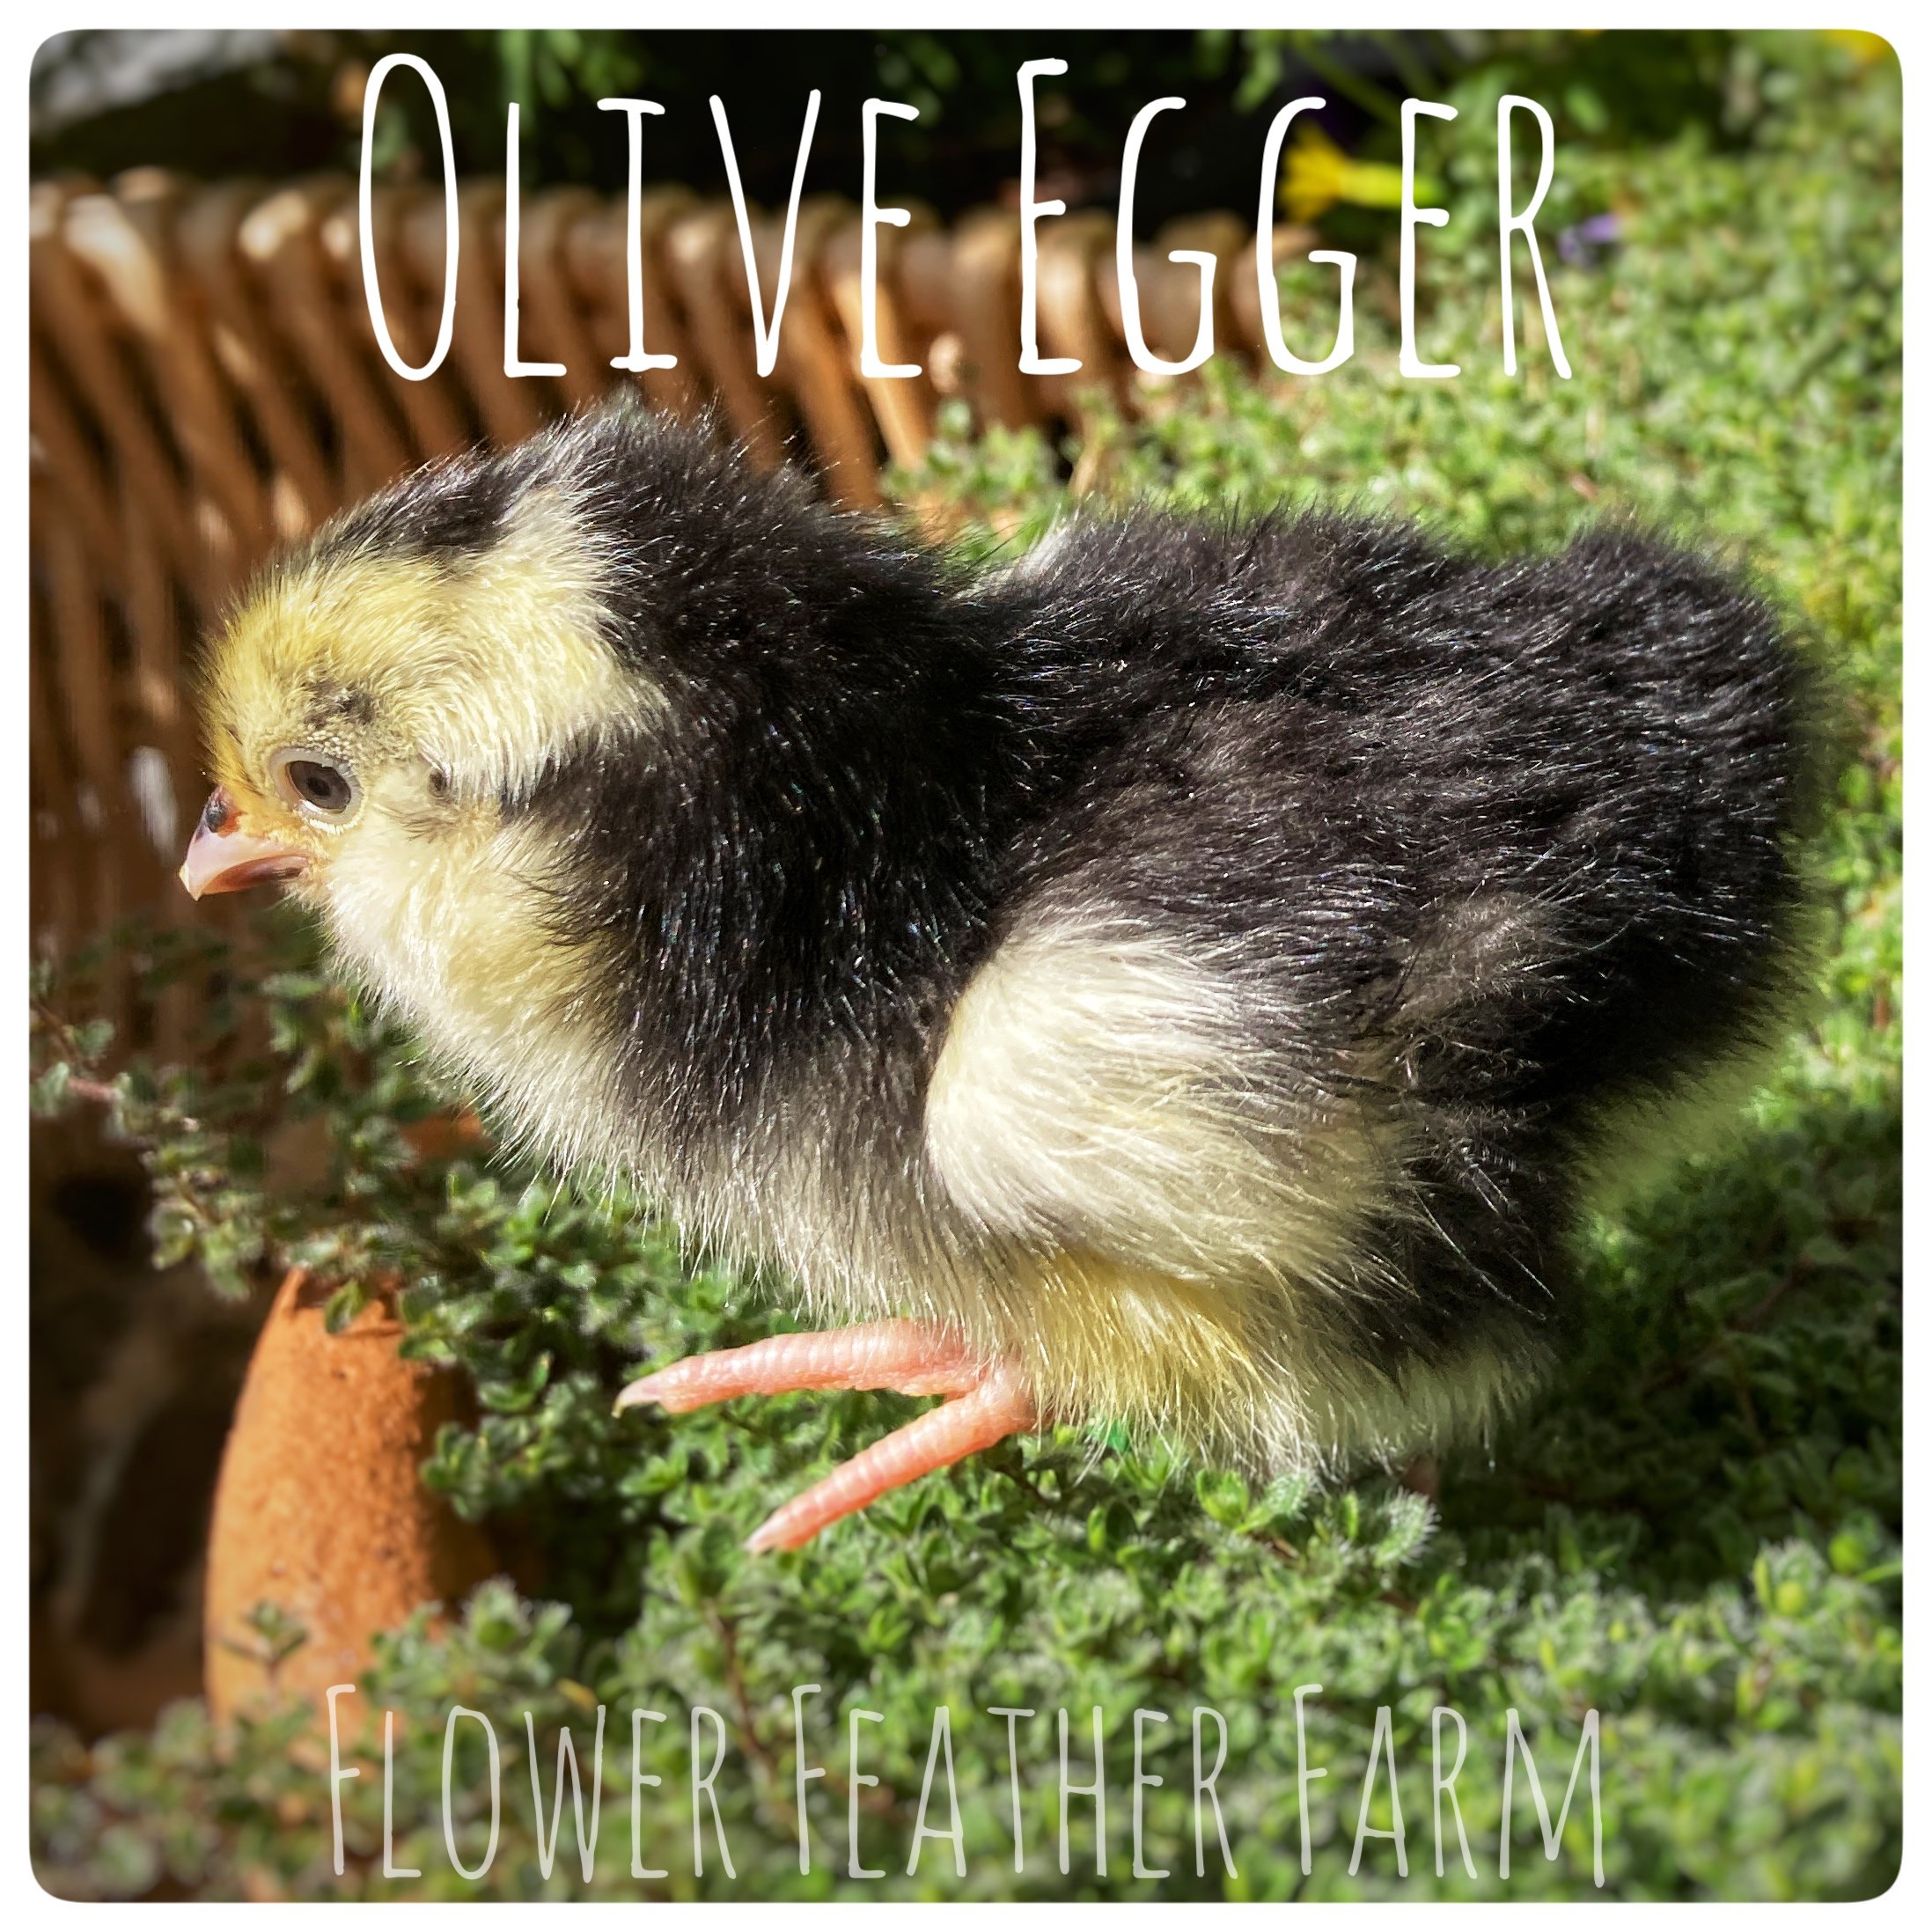 Olive Egger Chick